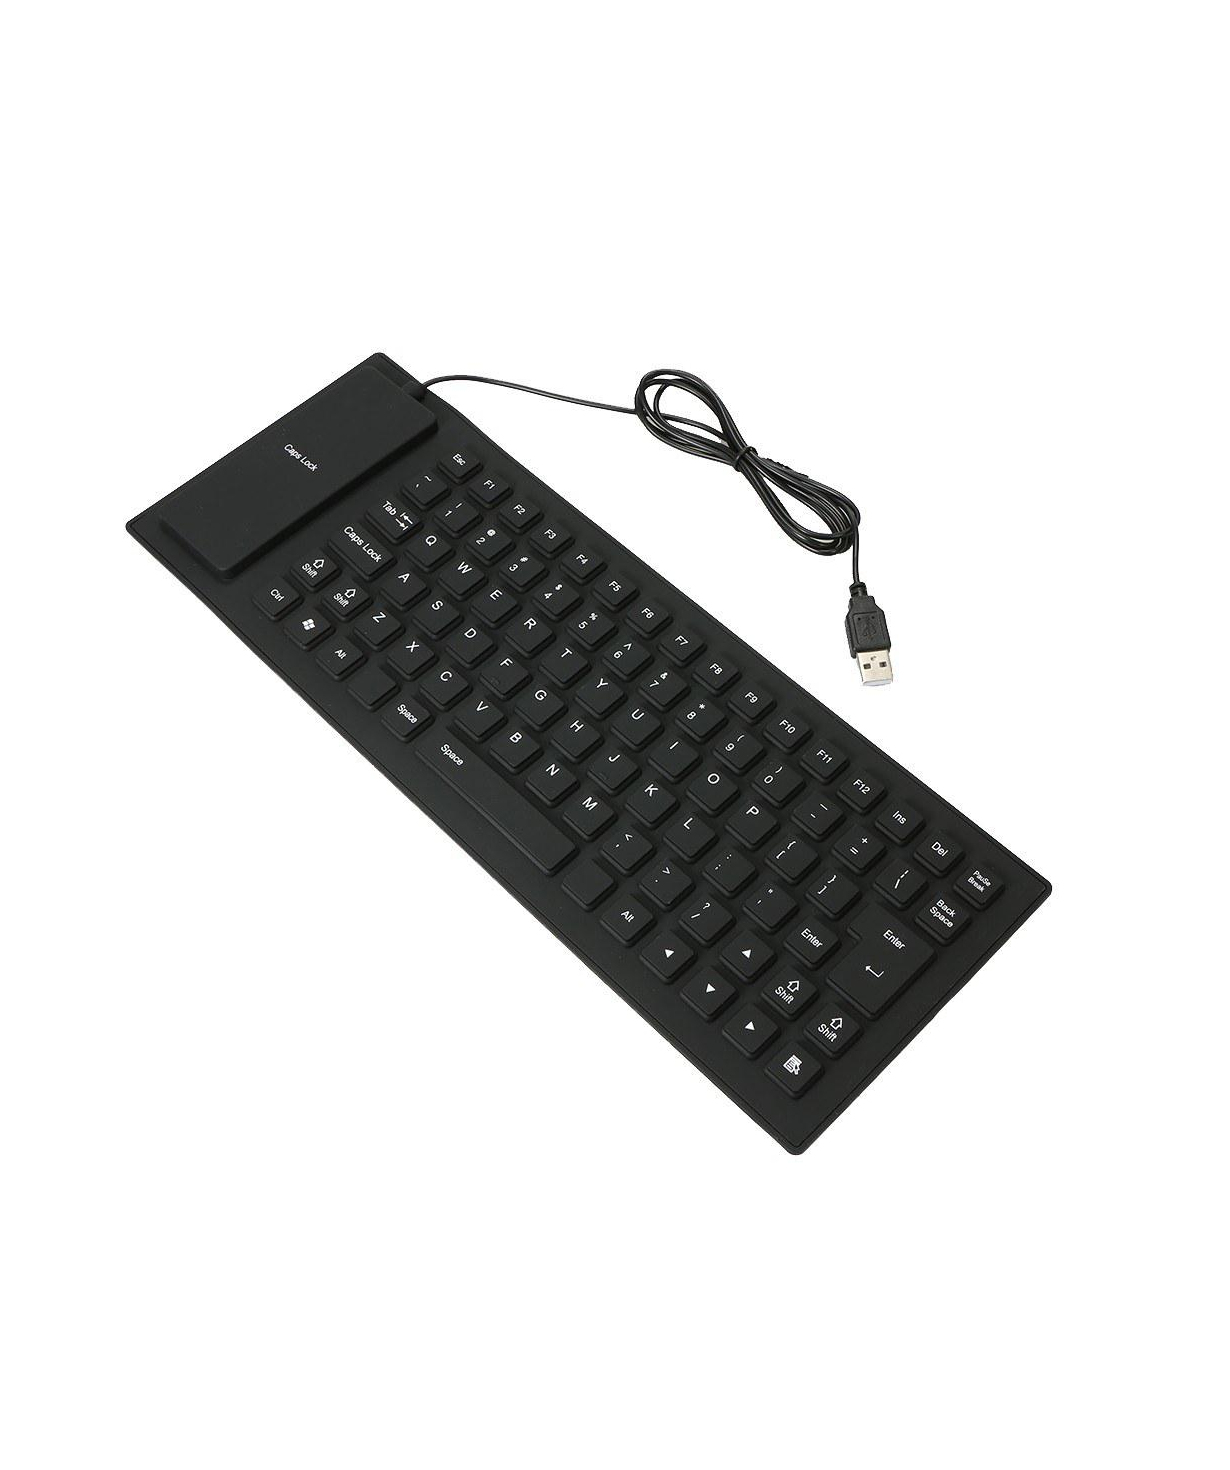 Ստեղնաշար USB FLEXIBLE KEYBOARD սև ու սպիտակ